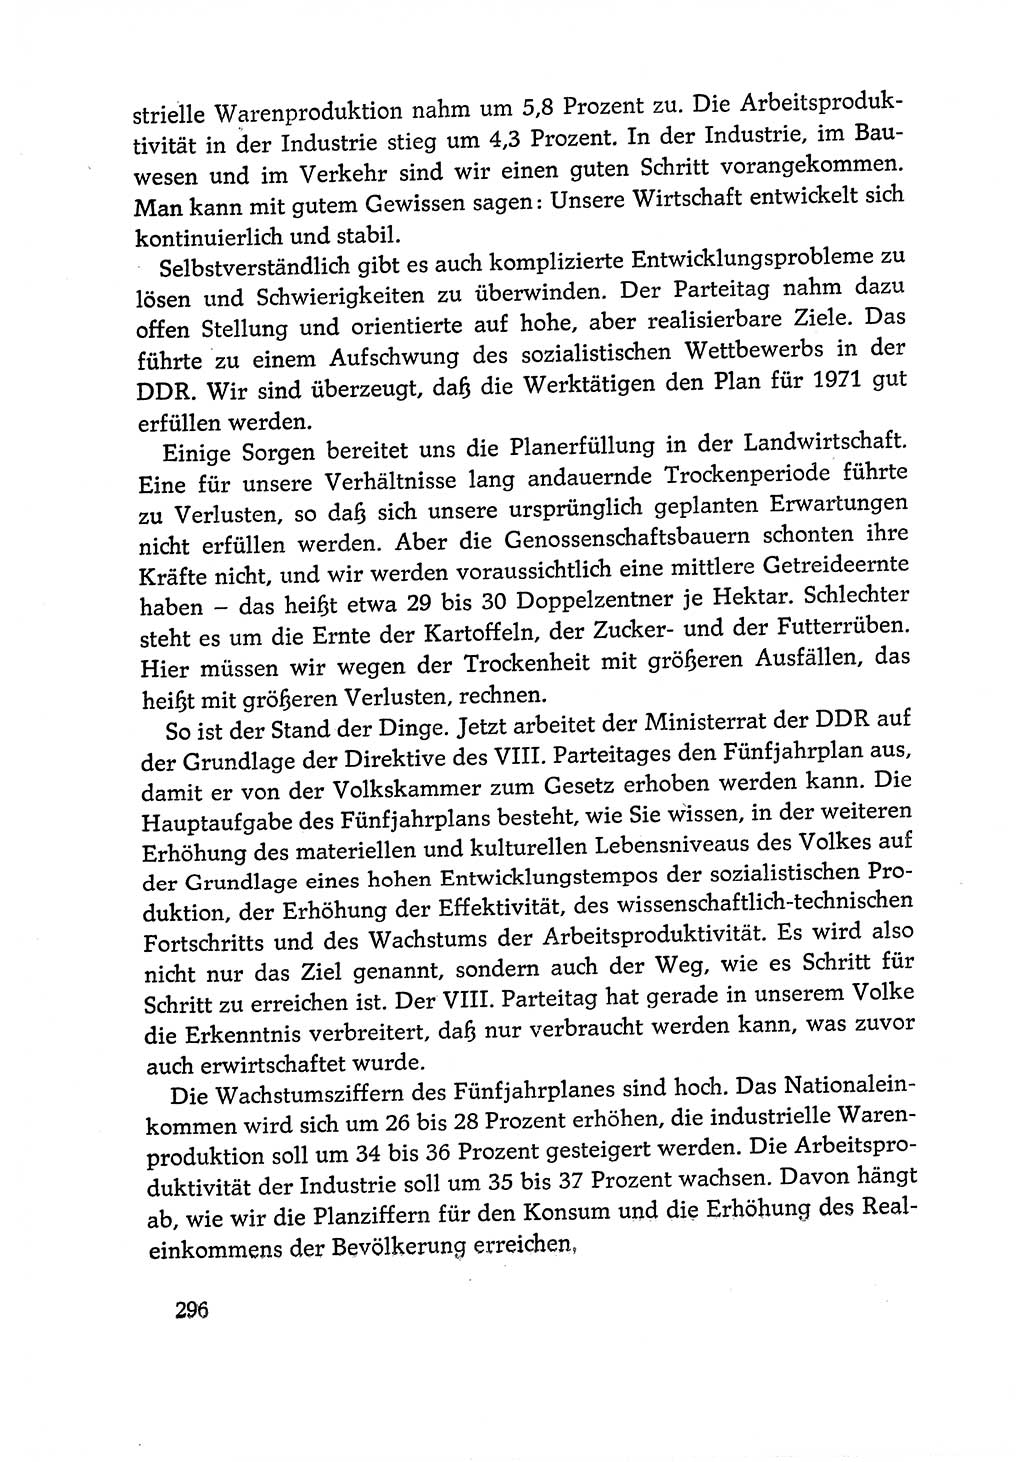 Dokumente der Sozialistischen Einheitspartei Deutschlands (SED) [Deutsche Demokratische Republik (DDR)] 1970-1971, Seite 296 (Dok. SED DDR 1970-1971, S. 296)